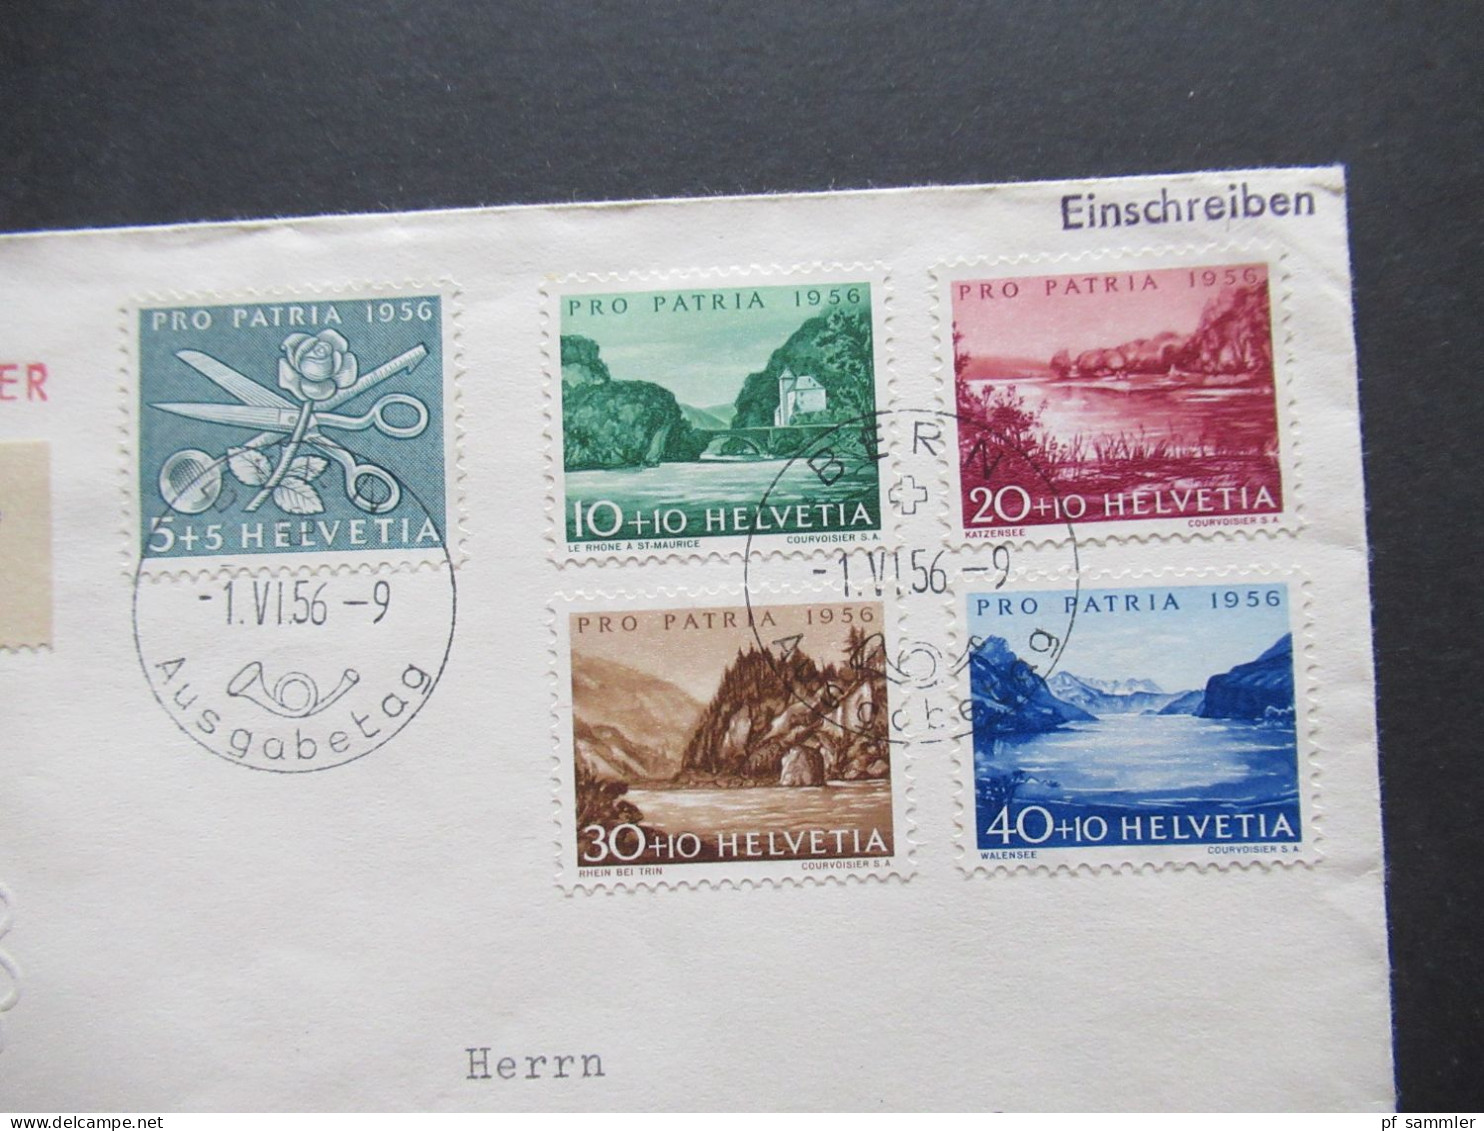 Schweiz 1956 Pro Patria Mi.Nr.627 / 631 FDC D Einschreiben Bern 1 Annahme Bundesfeier Nach Menden Sauerland Gesendet - Lettres & Documents